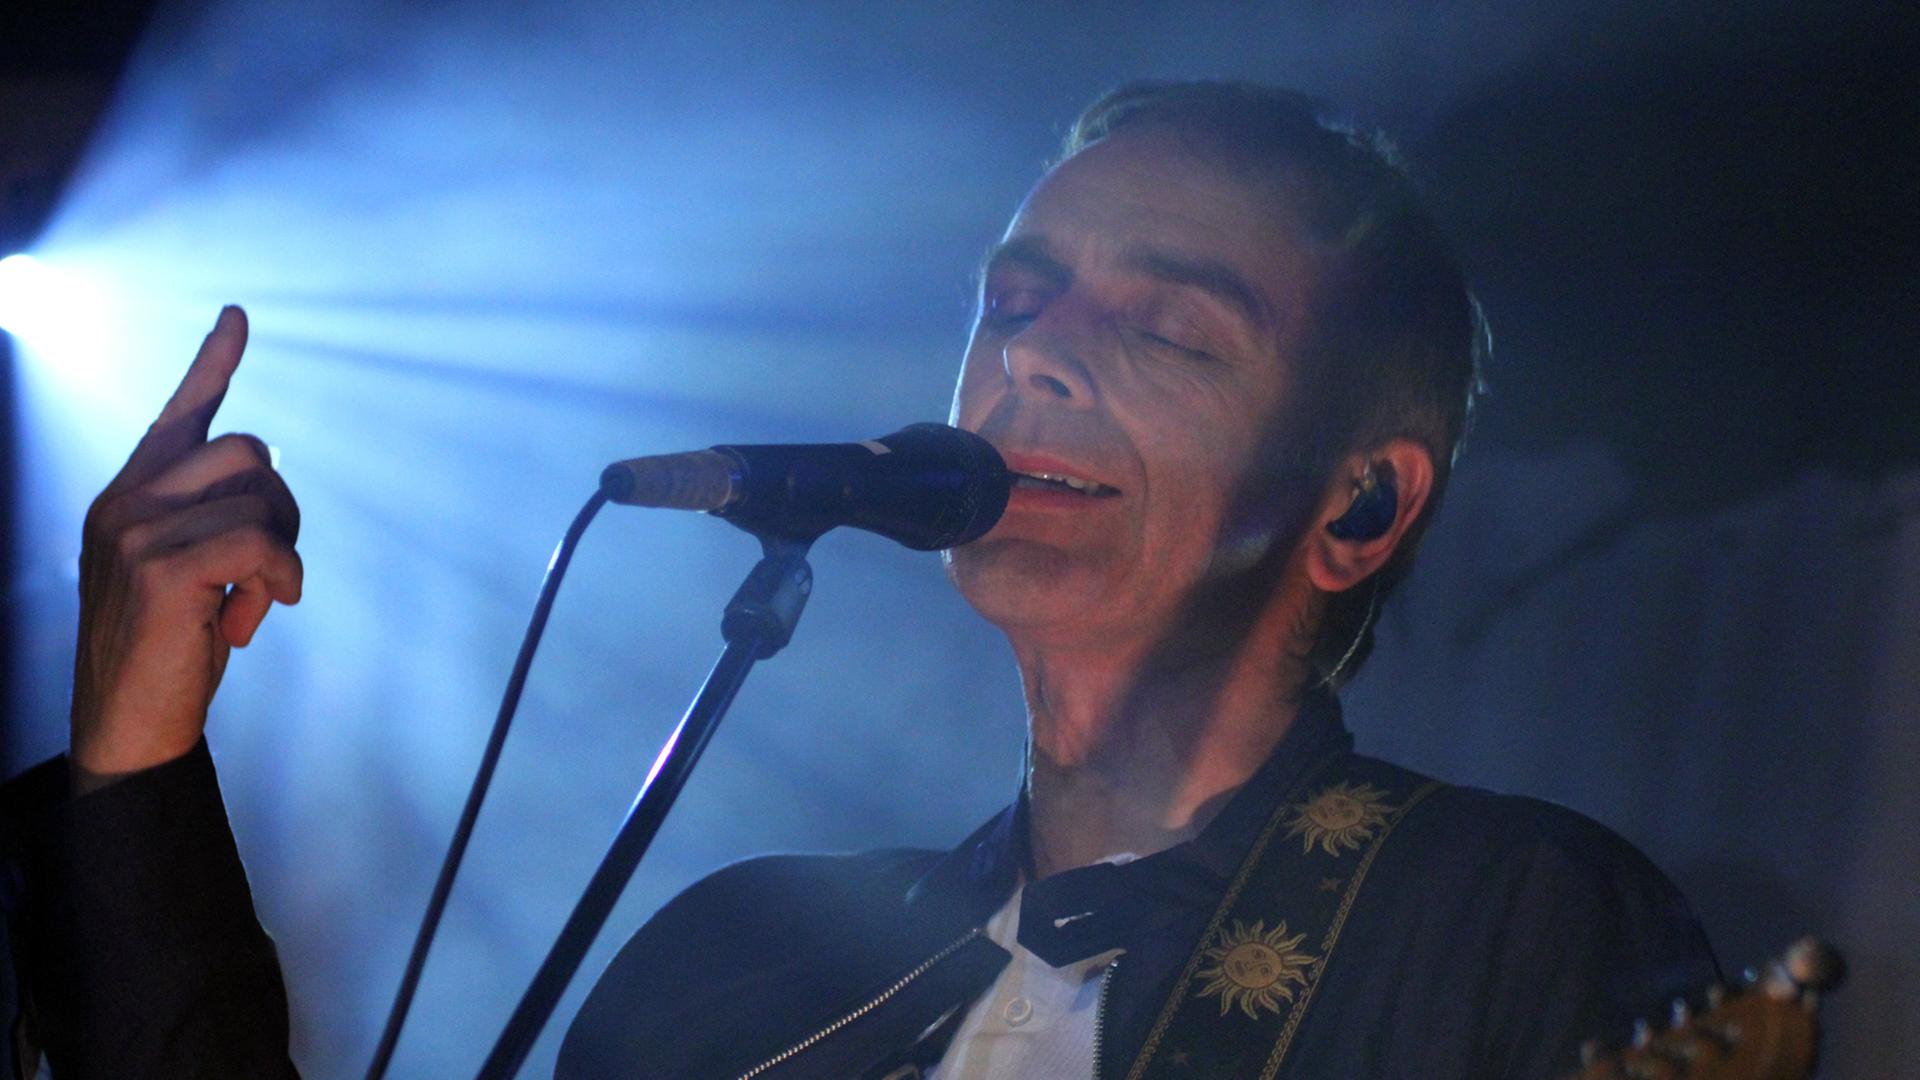 Karl Hyde, Kopf und Sänger der britischen Band "Underworld" im Scheinwerferlicht am Mikro bei einem Konzert